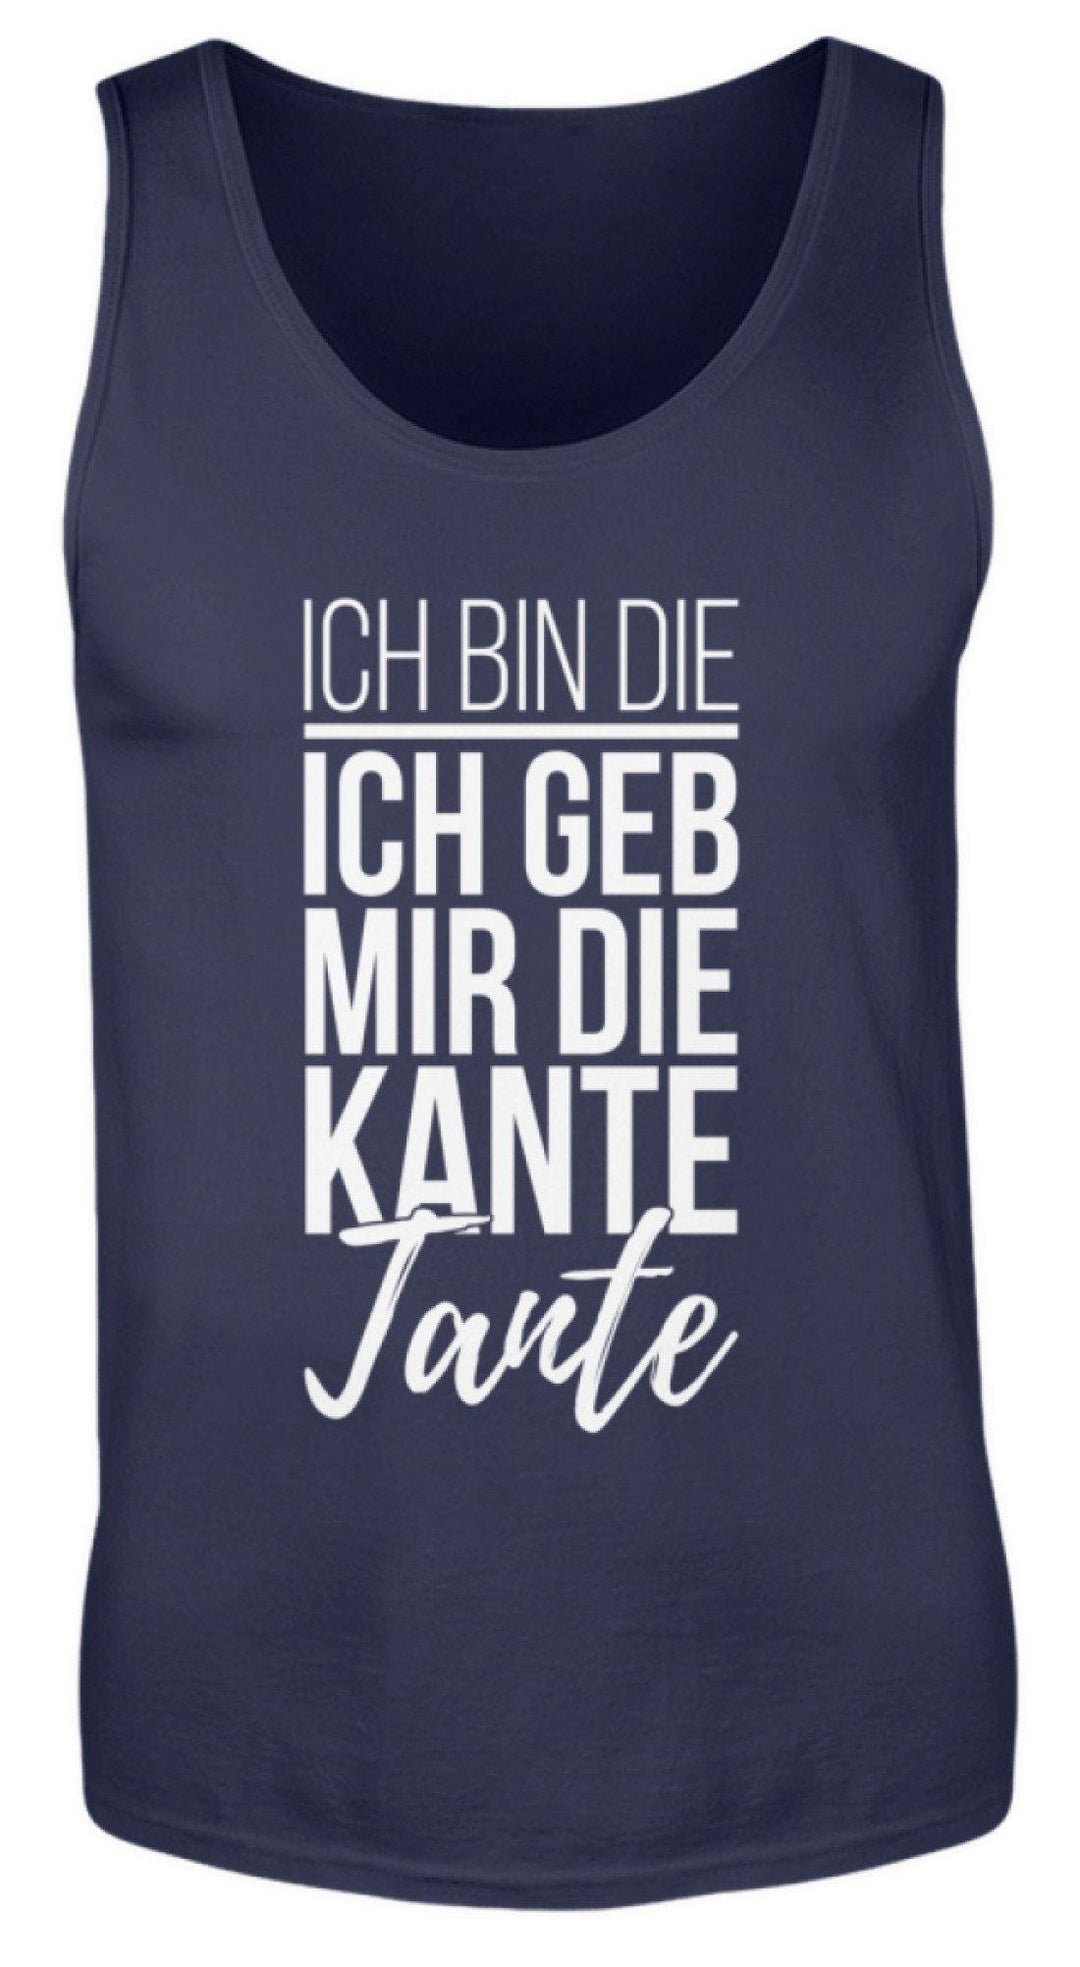 Kante Tante - Words on Shirts  - Herren Tanktop - Words on Shirts Sag es mit dem Mittelfinger Shirts Hoodies Sweatshirt Taschen Gymsack Spruch Sprüche Statement